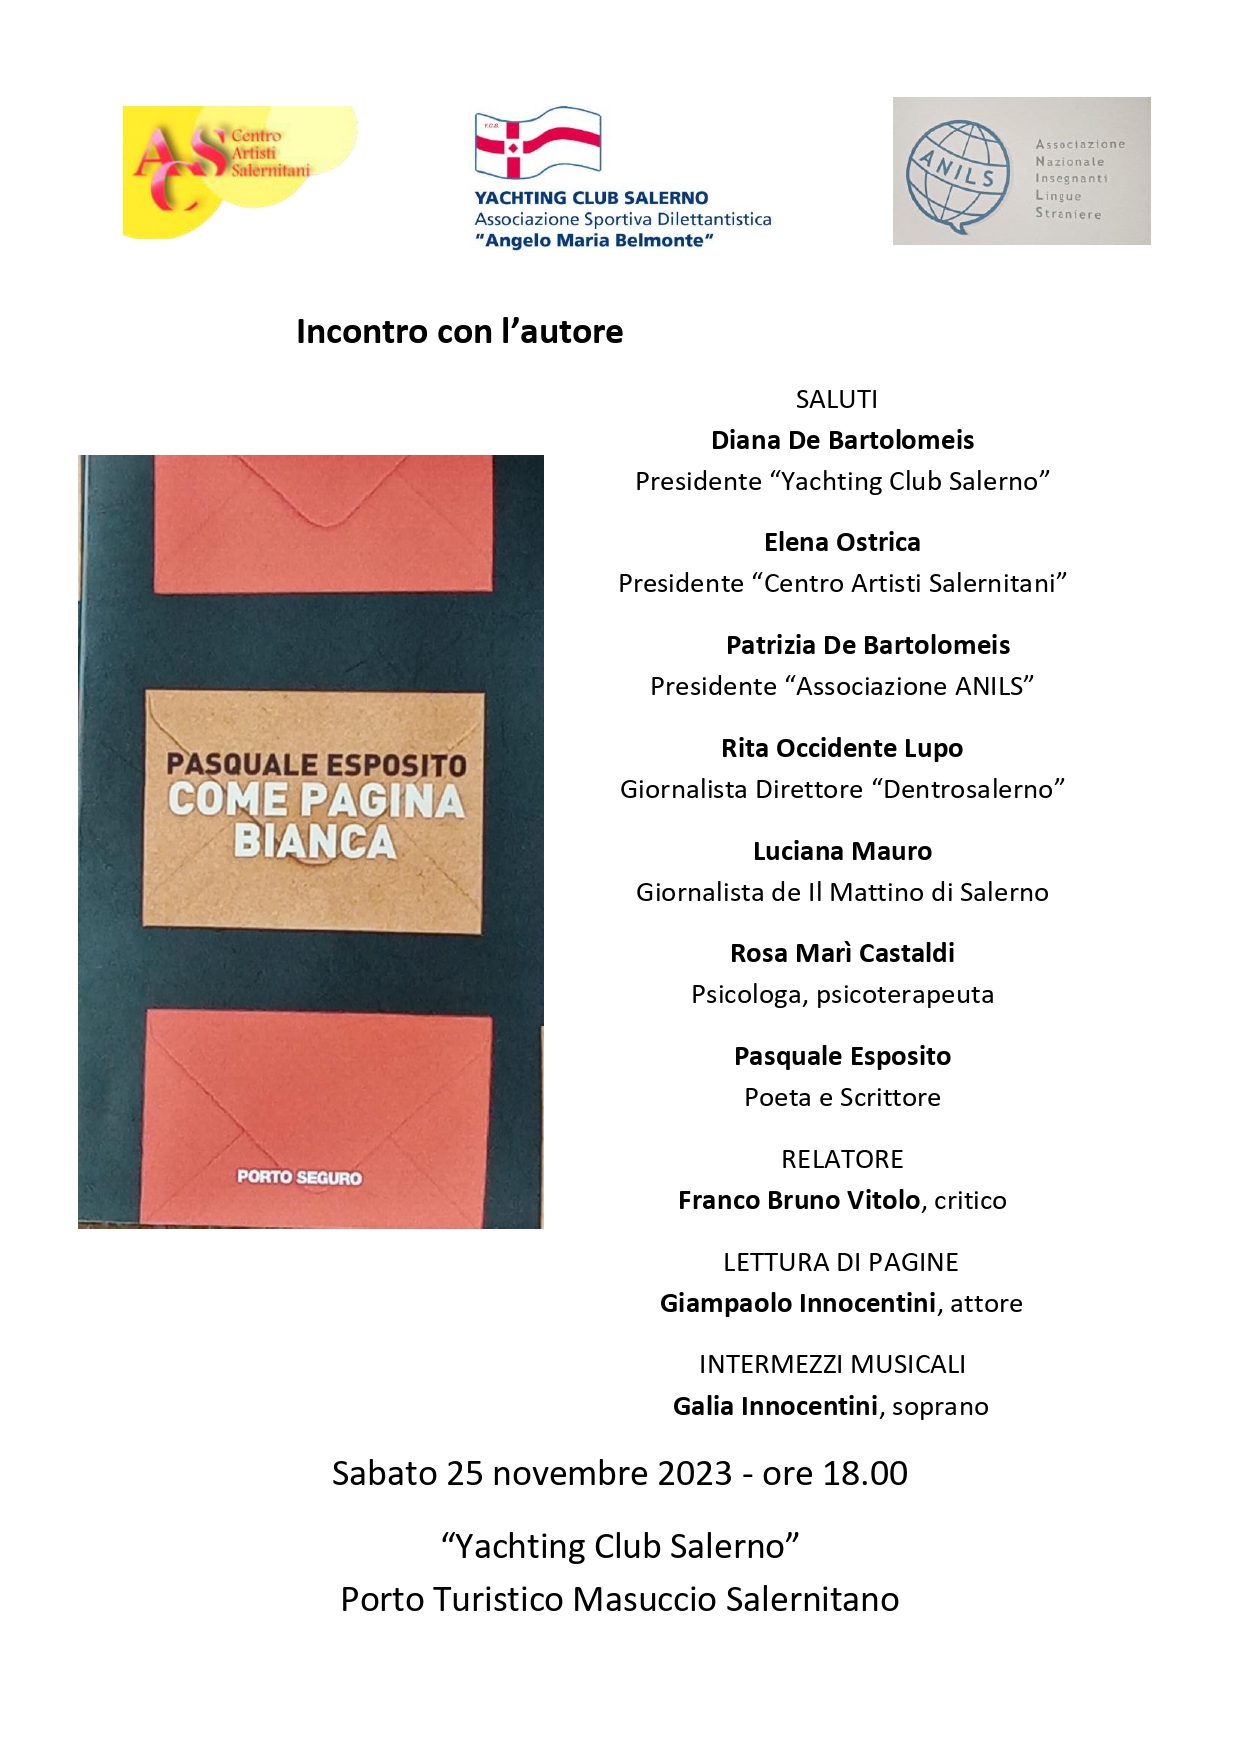 Salerno: Incontro con l’autore, presentazione libro di Pasquale Esposito “Come pagina bianca”